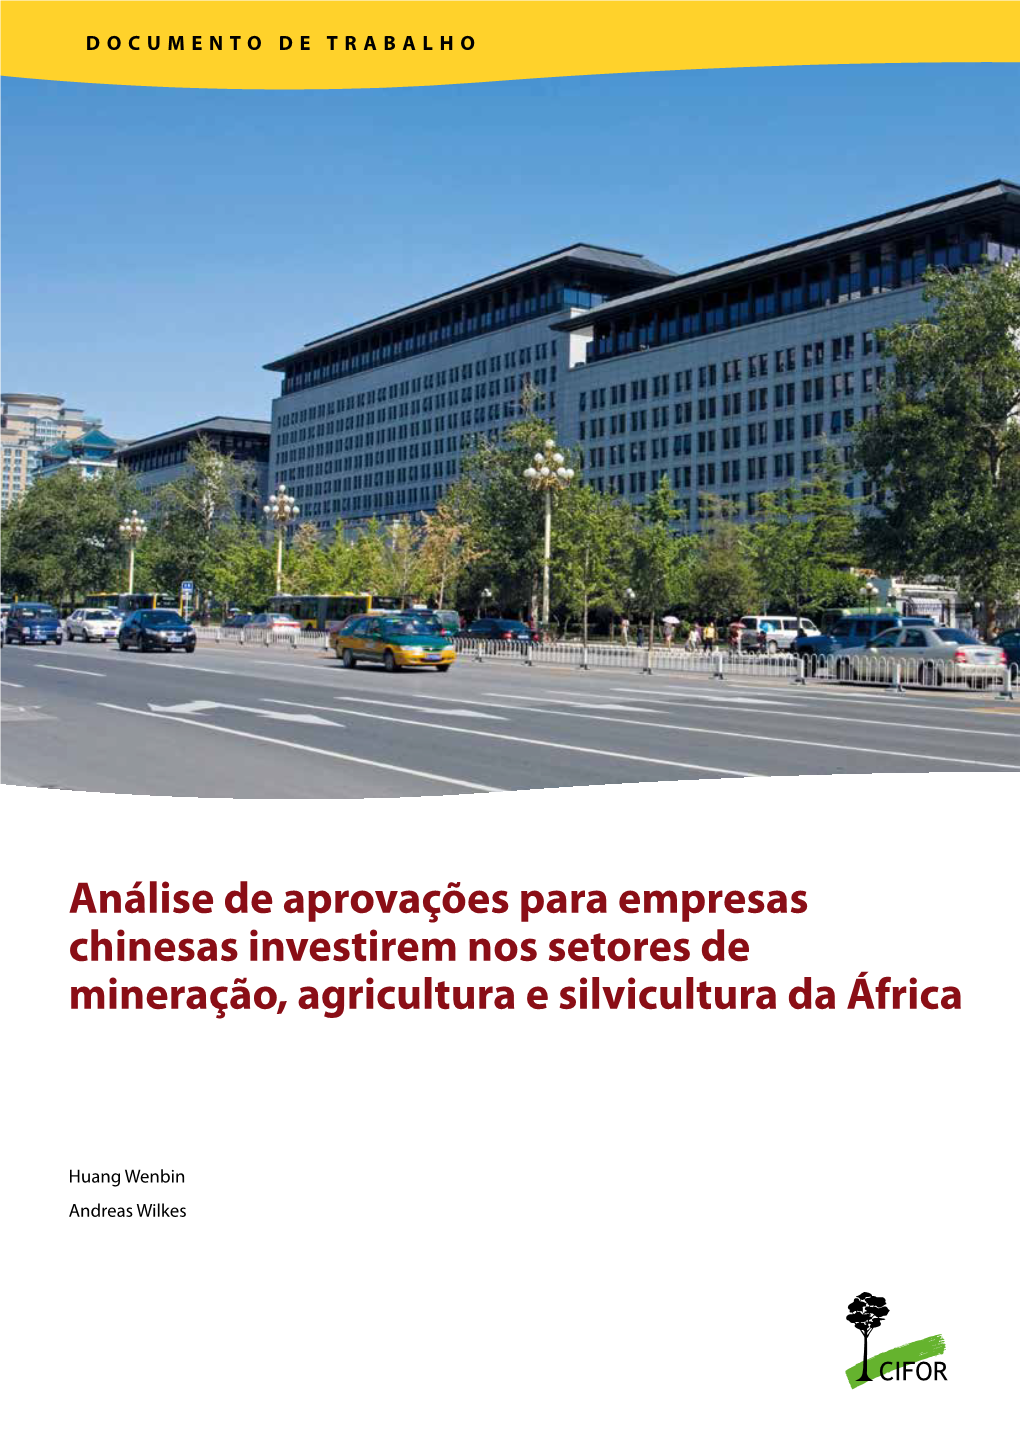 Análise De Aprovações Para Empresas Chinesas Investirem Nos Setores De Mineração, Agricultura E Silvicultura Da África